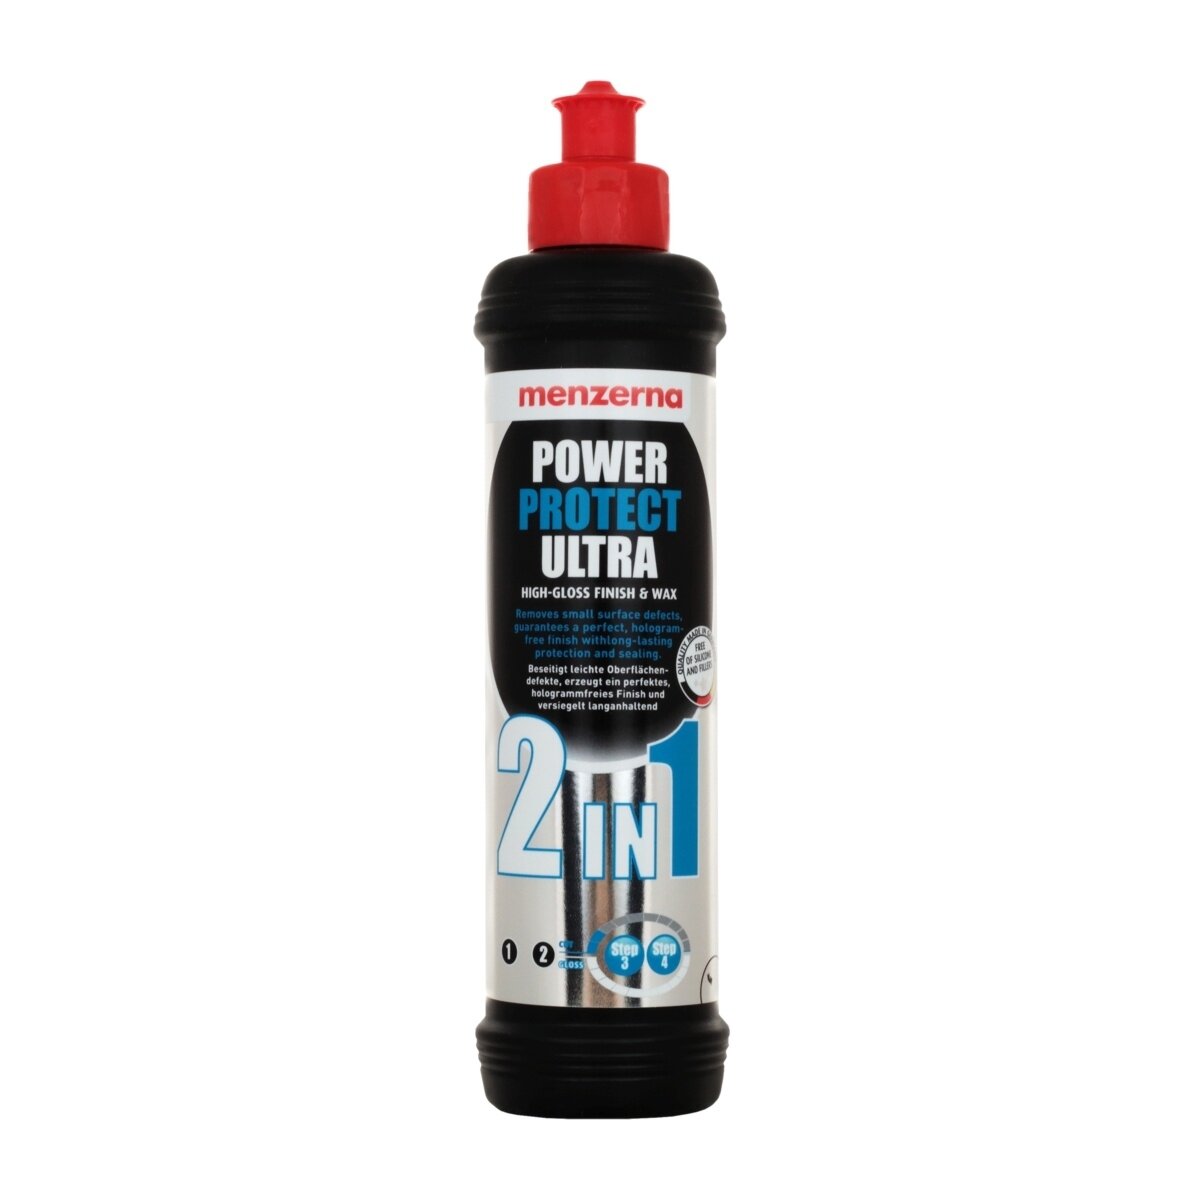 Низкоабразивная полировальная паста Menzerna Power Protect Ultra 2 in 1 250 мл 22753.281.001